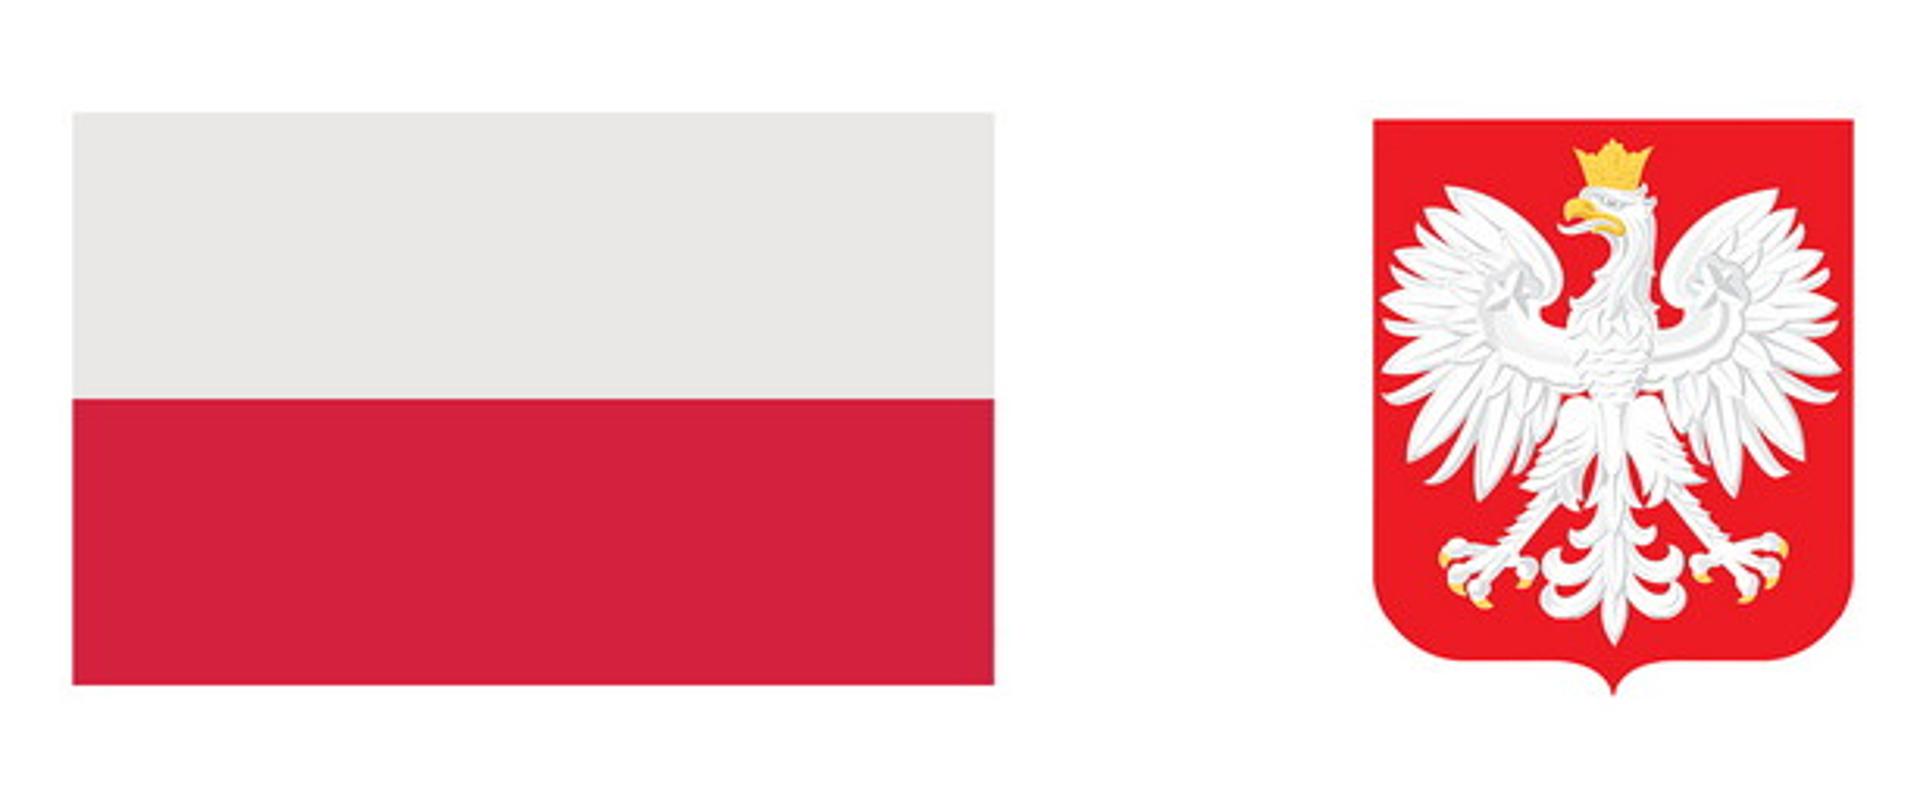 biało czerwona flaga obok godło Polski biały orzeł ze złota koroną na czerwonym tle